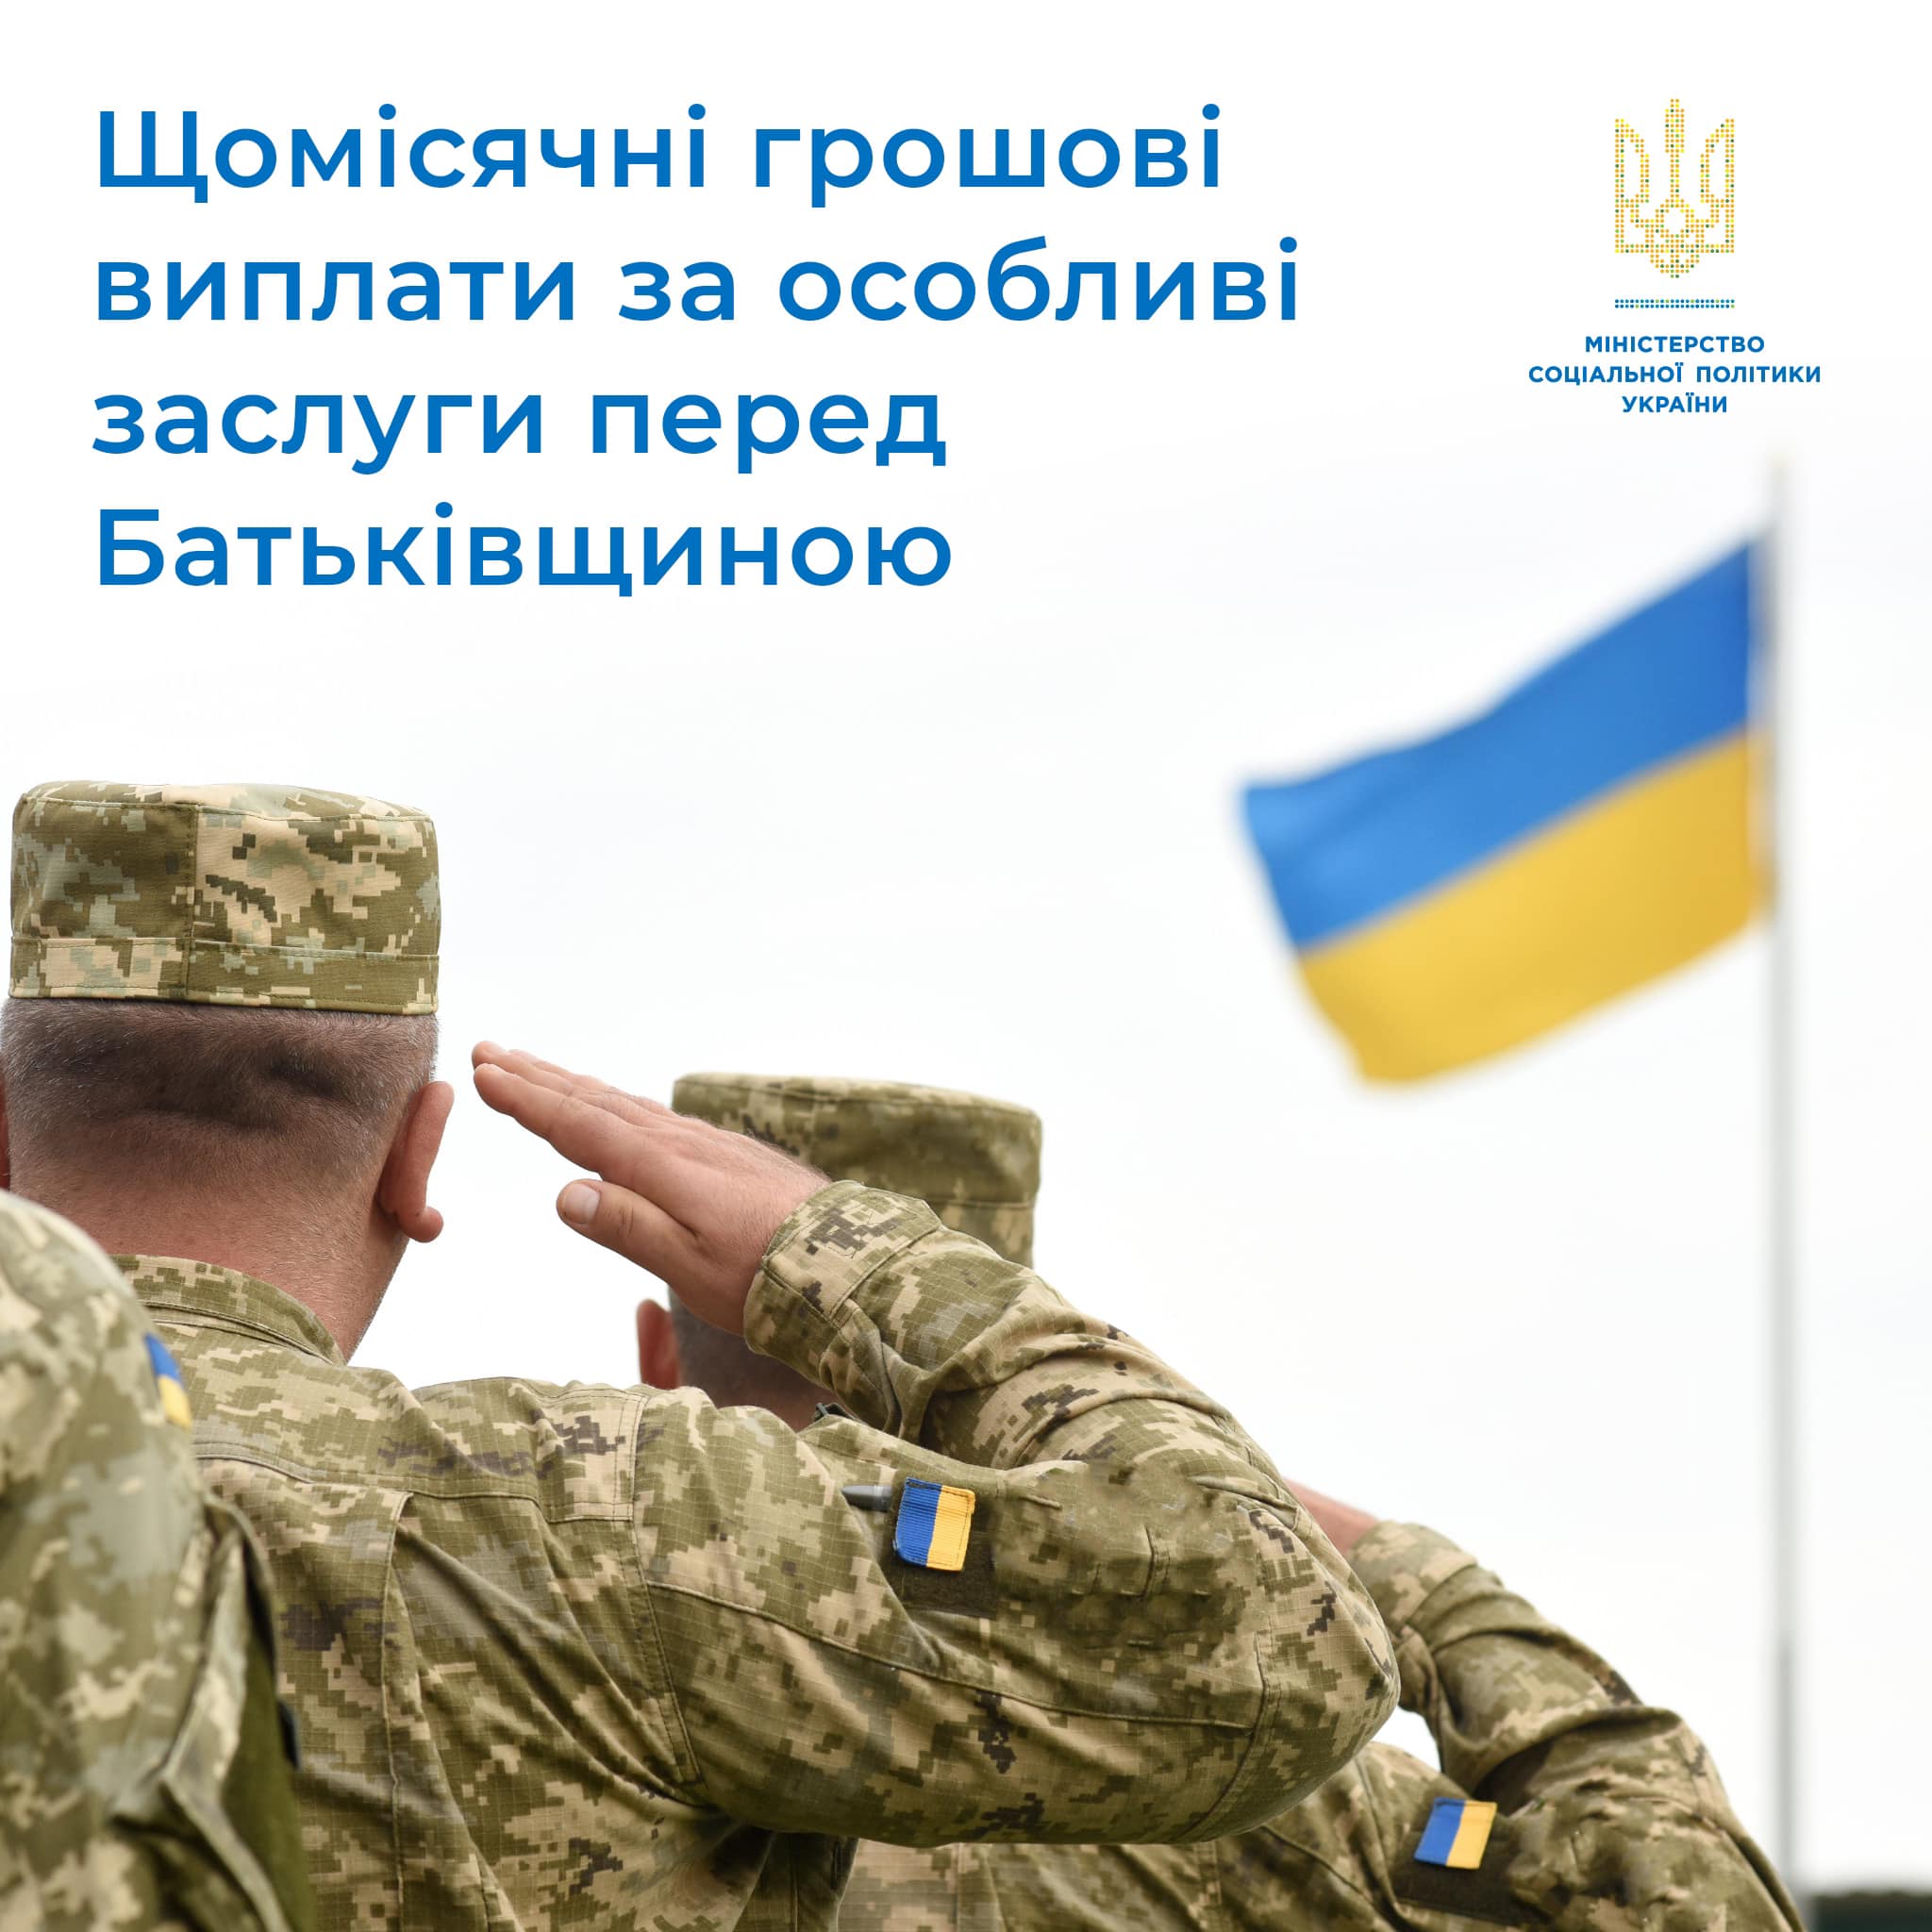 Некоторые украинские военнослужащие получат выплаты до 20 100 грн, - Минсоцполитики